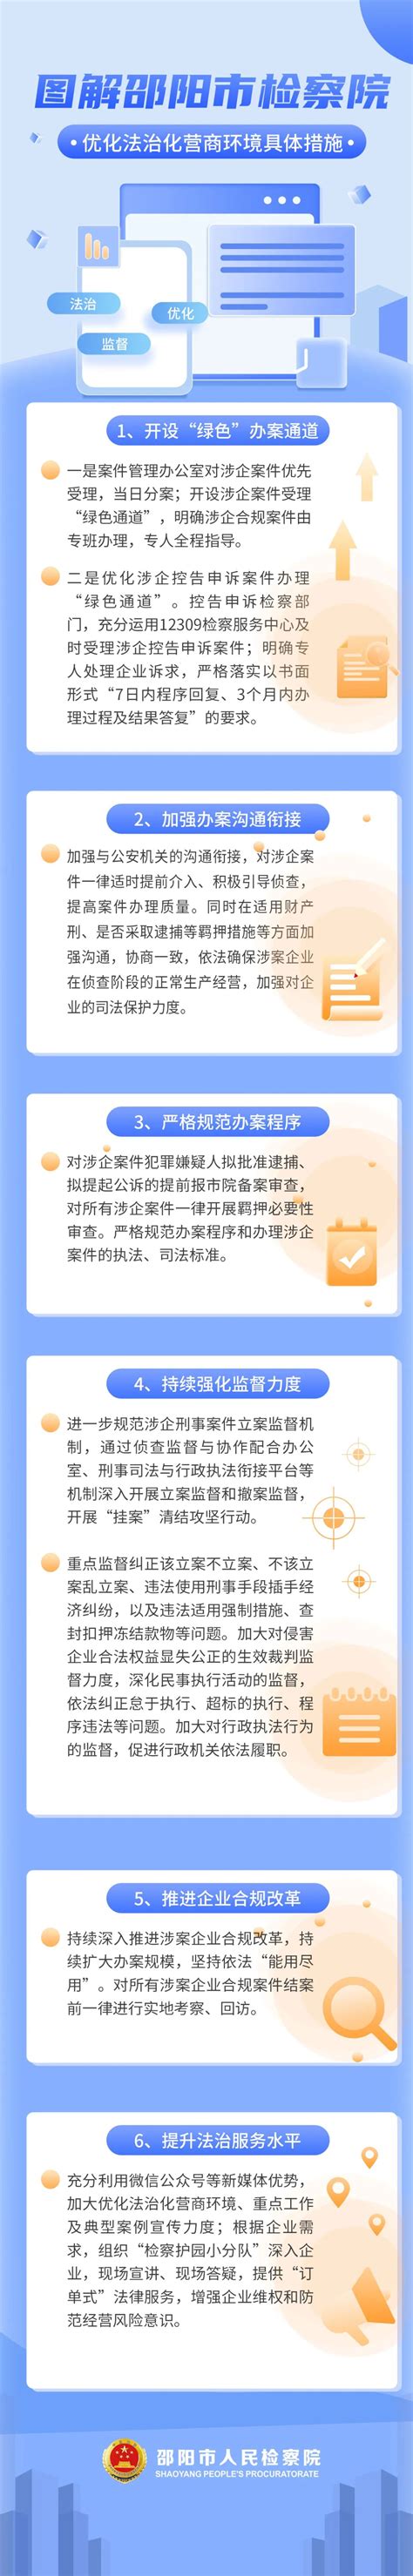 图解 | 邵阳市检察院优化法治化营商环境具体措施 - 法报视线 - 新湖南